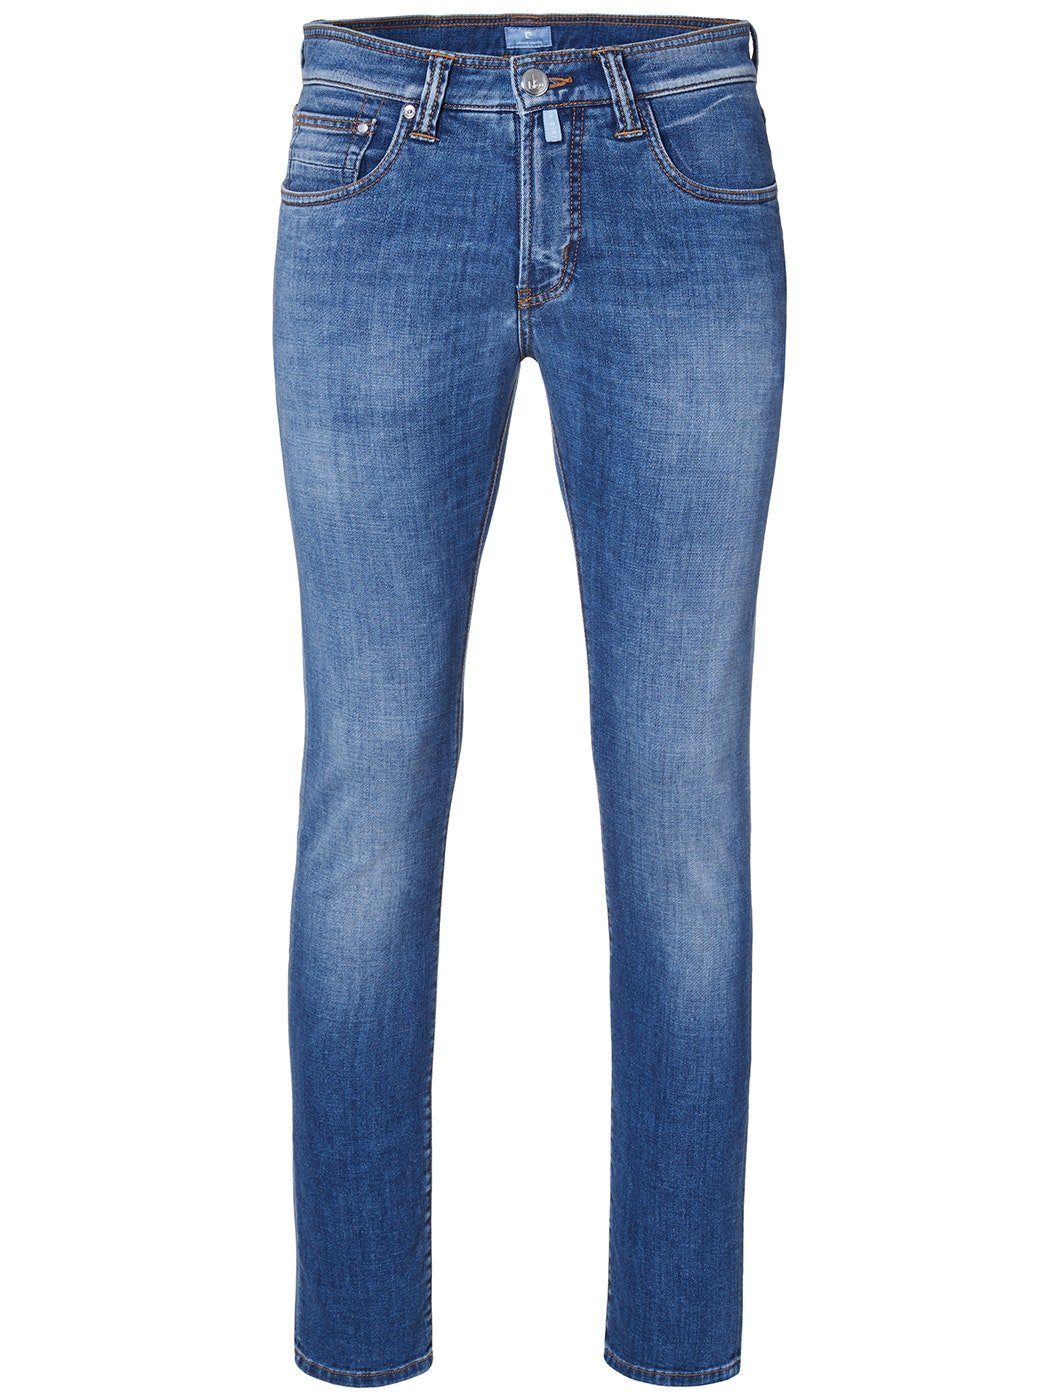 Pierre Cardin 5-Pocket-Jeans PIERRE CARDIN ANTIBES dark blue used 3003 6100.53